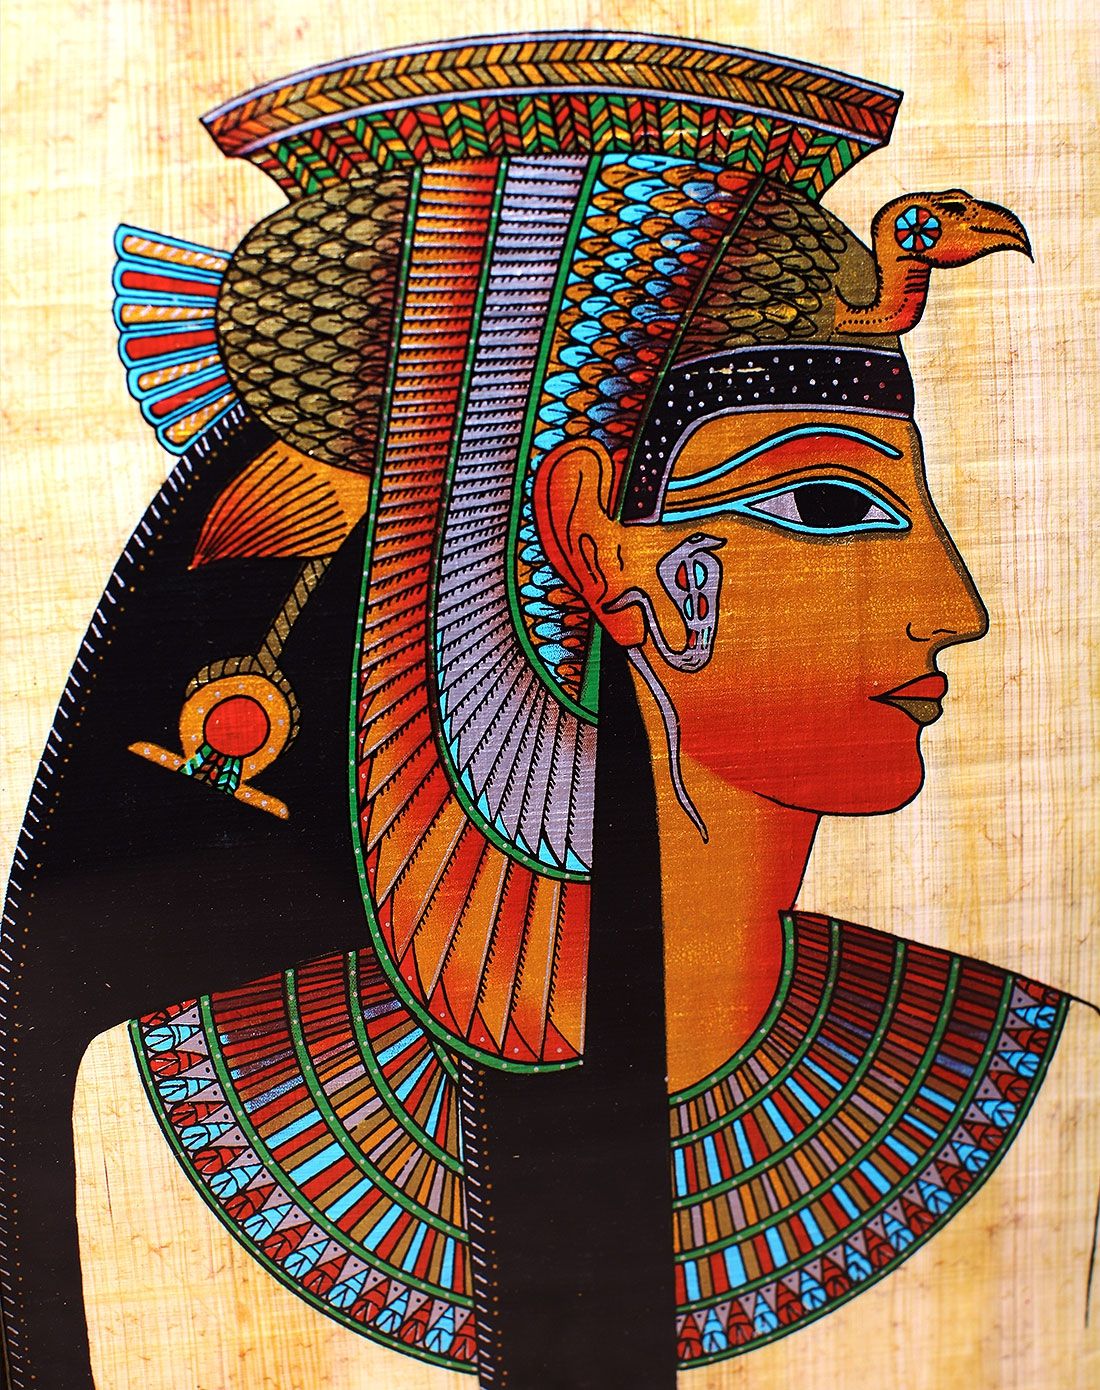 让凯撒大帝着迷不已的埃及艳后到底美到程度?看这组画像就知道了